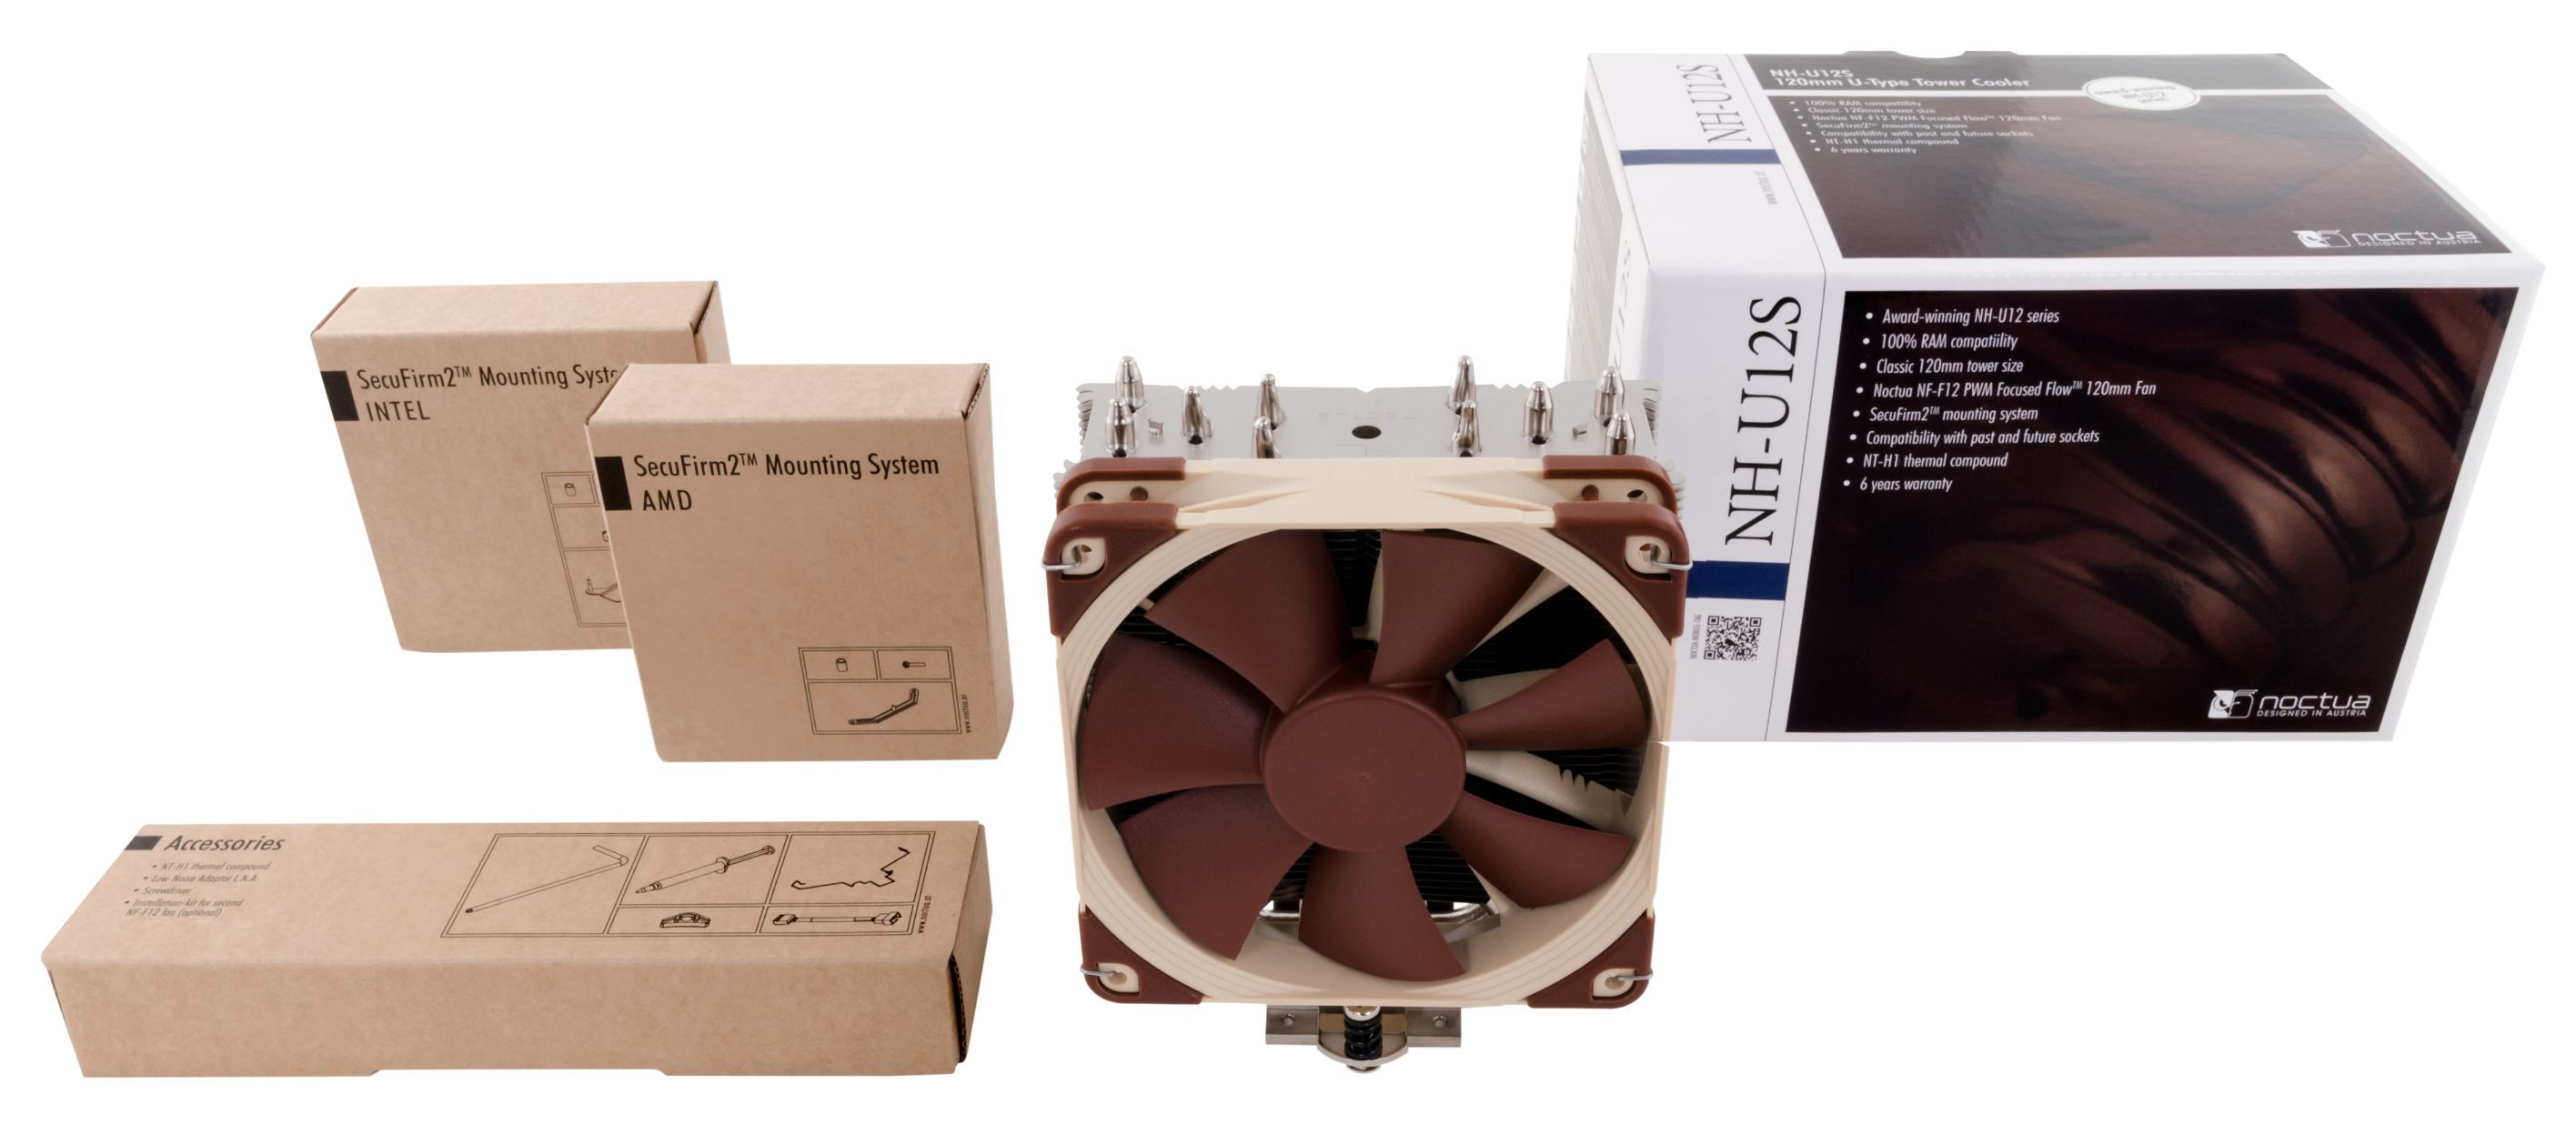 Noctua NH-U12S CPU-Kühler für Intel und AMD Prozessoren, 120mm Lüfter